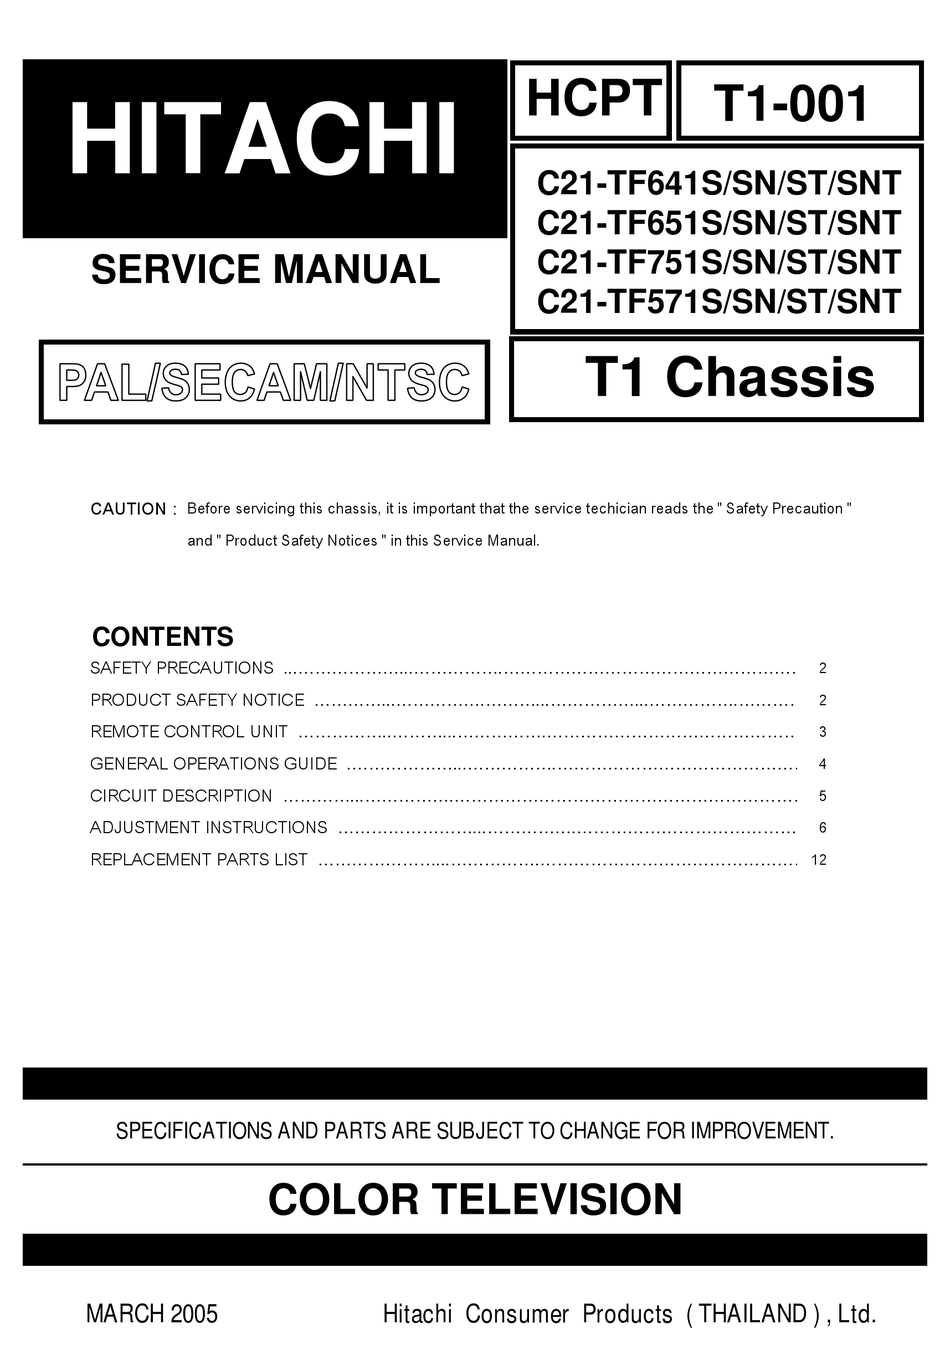 TESLA TV-S-7000-SCHNEIDER-CHASSI-DTV101-1 Service Manual download